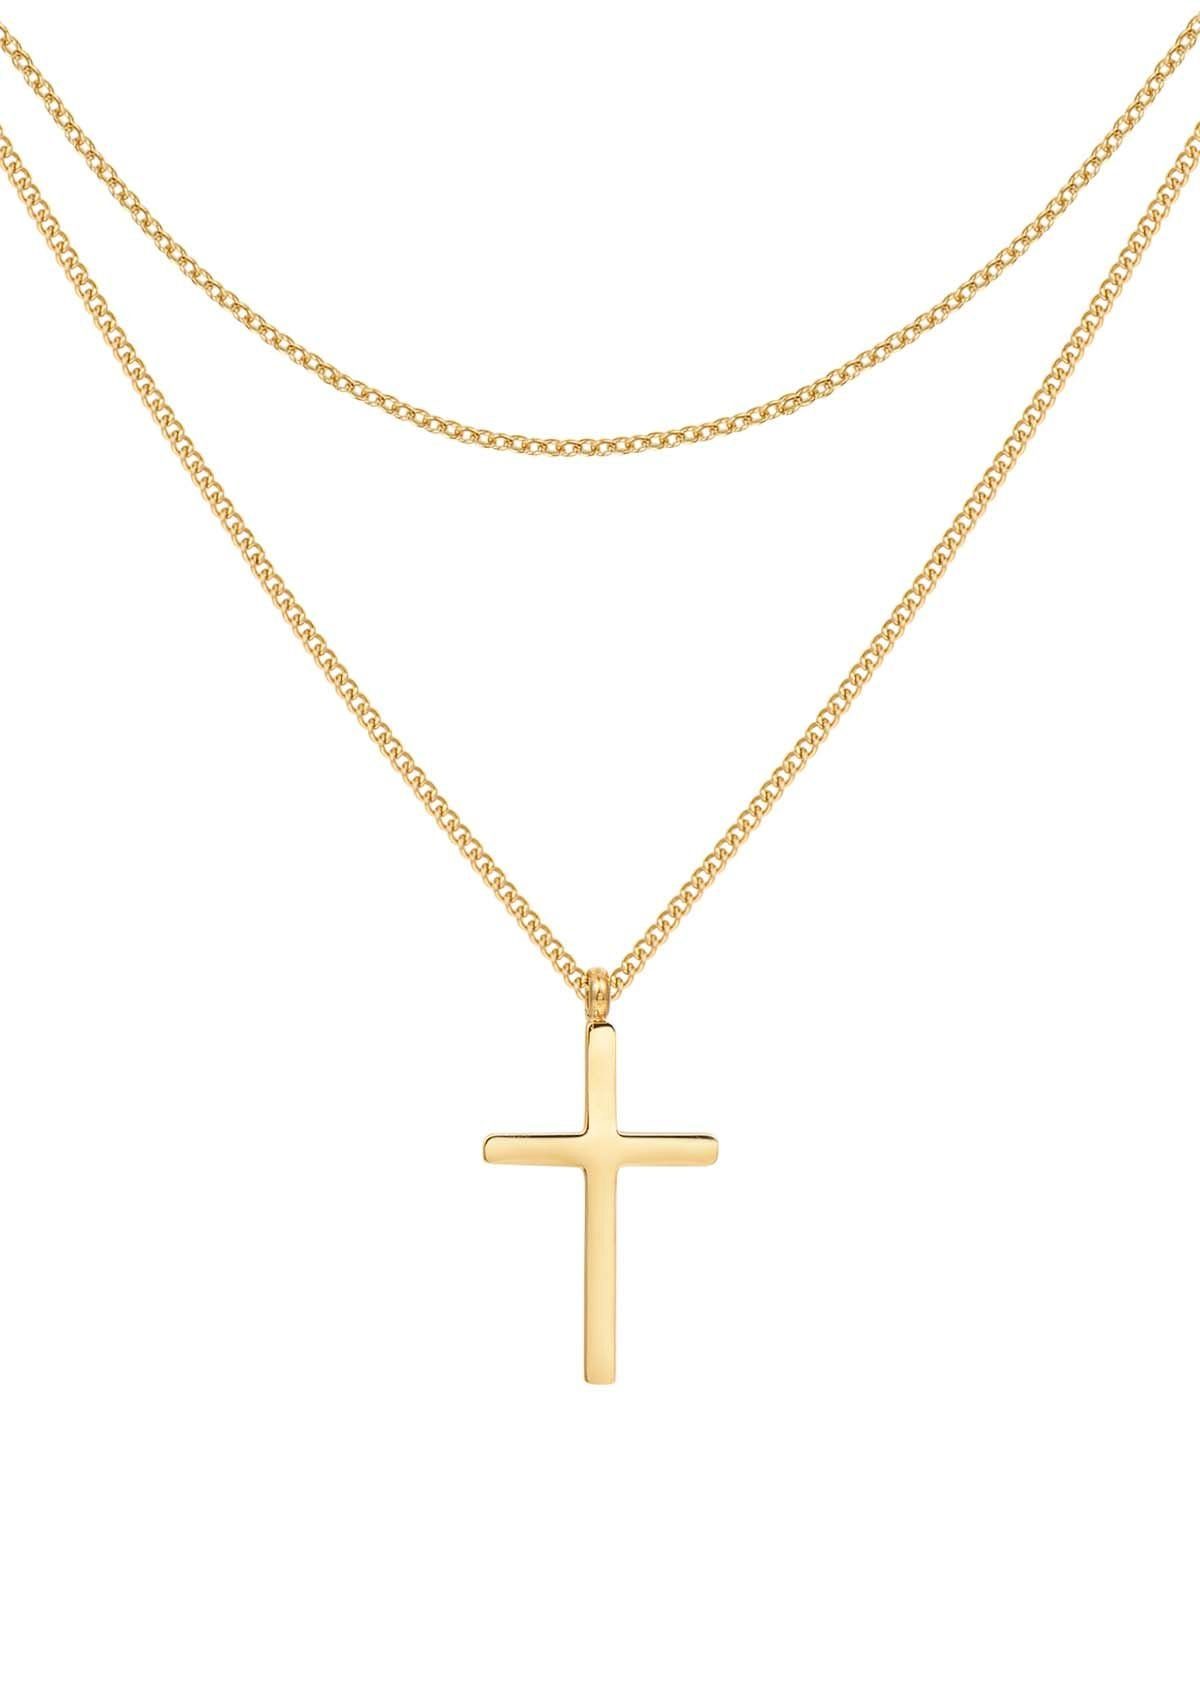 Goldene Kreuzkette online kaufen | OTTO